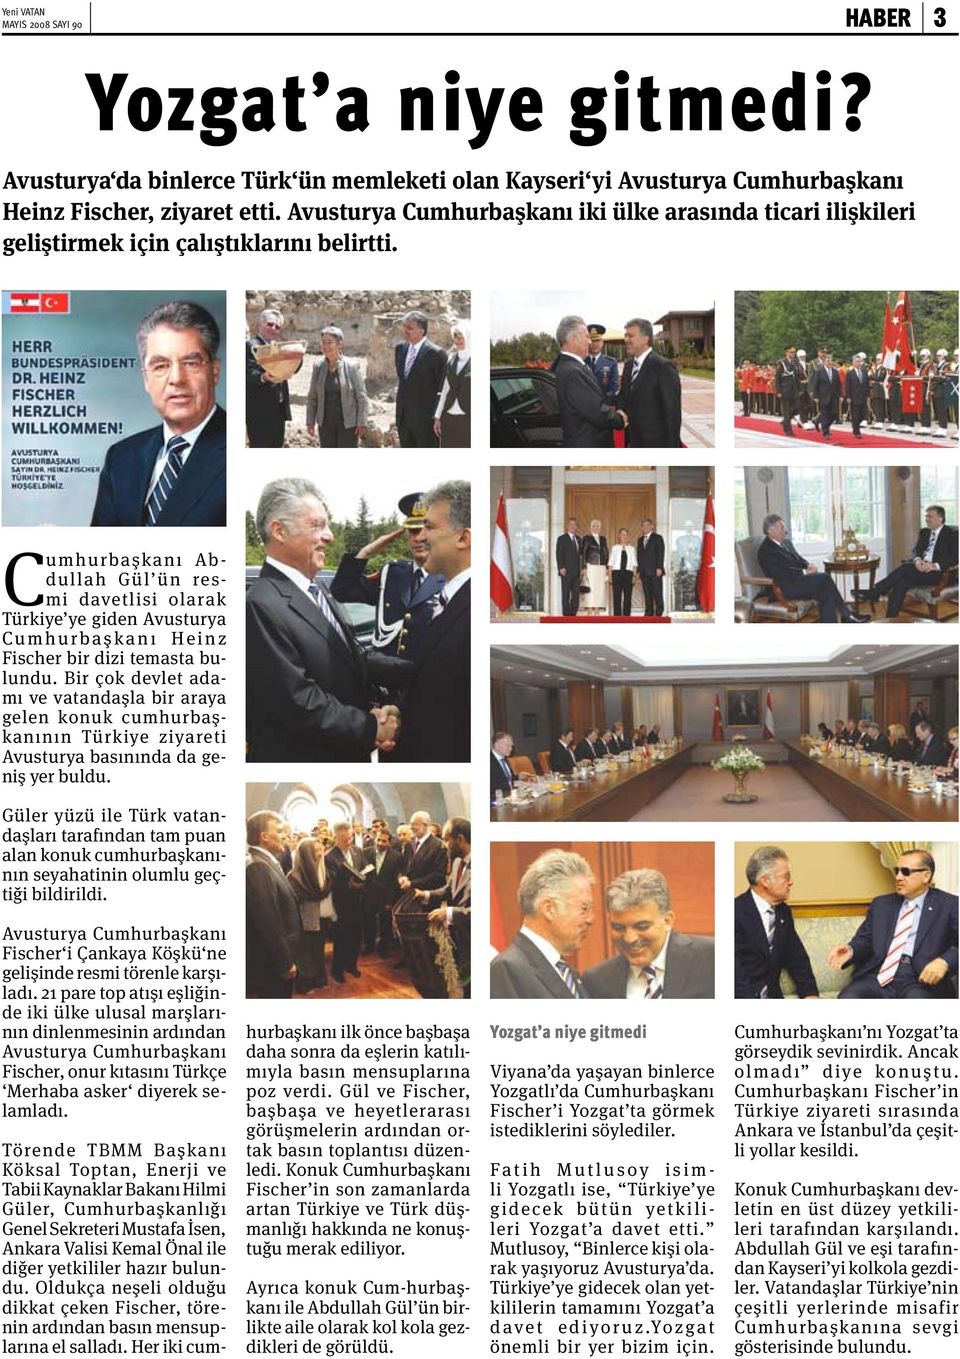 Cumhurbaşkanı Ab - dullah Gül ün resmi davetlisi olarak Türkiye ye giden Avusturya Cu m h u r b a ş k a n ı H e i n z Fischer bir dizi temasta bulundu.